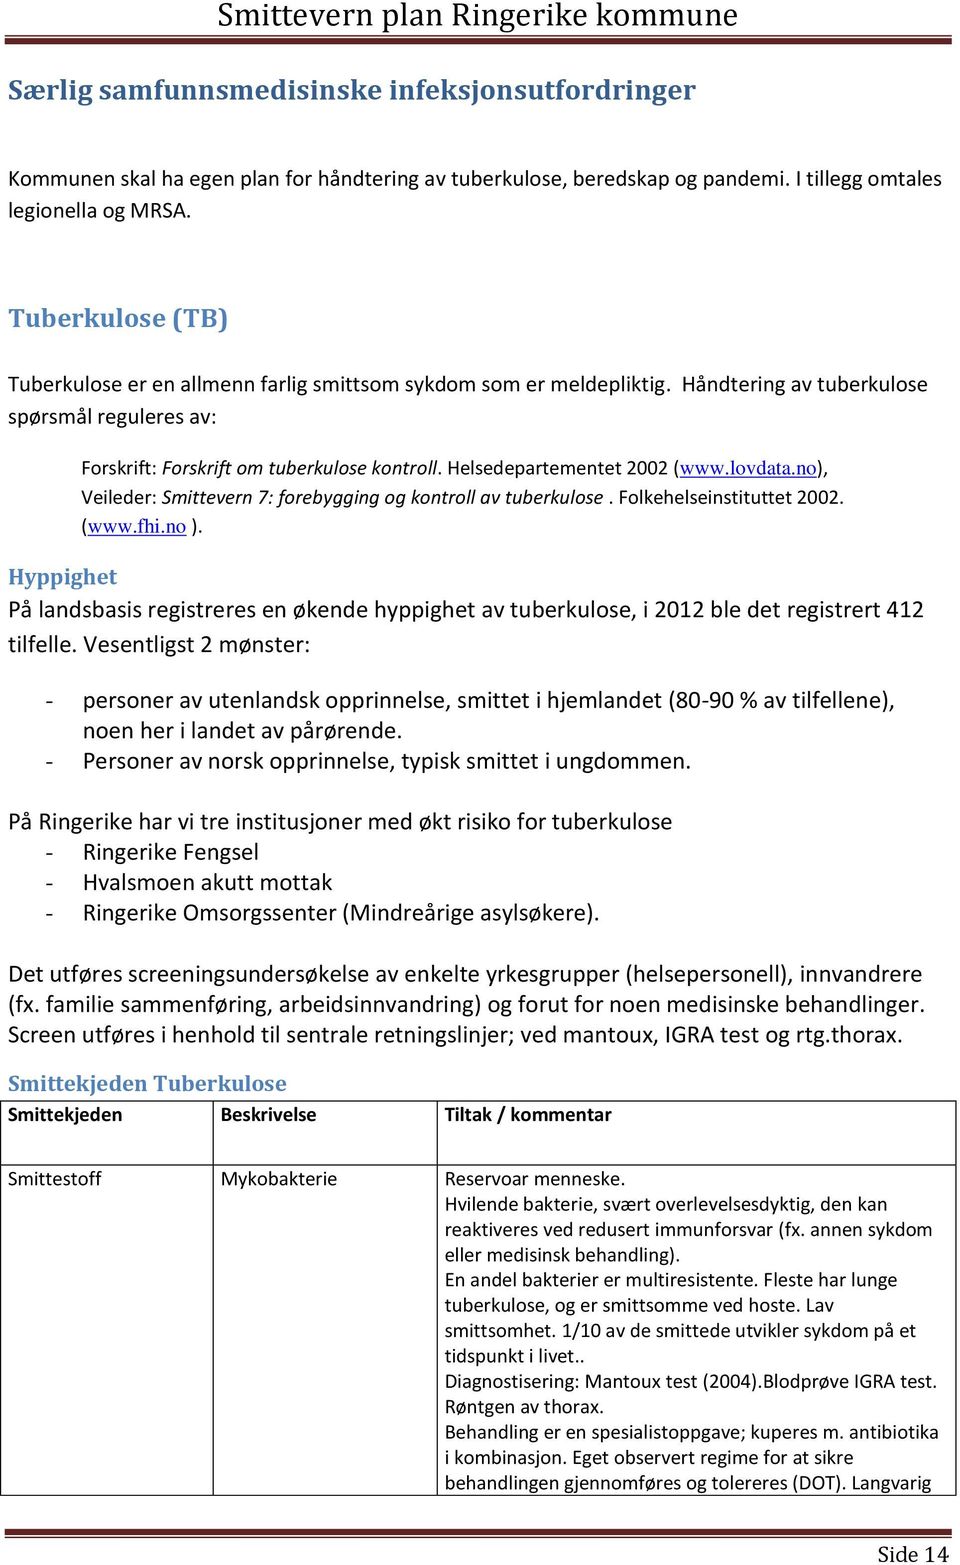 Helsedepartementet 2002 (www.lovdata.no), Veileder: Smittevern 7: forebygging og kontroll av tuberkulose. Folkehelseinstituttet 2002. (www.fhi.no ).